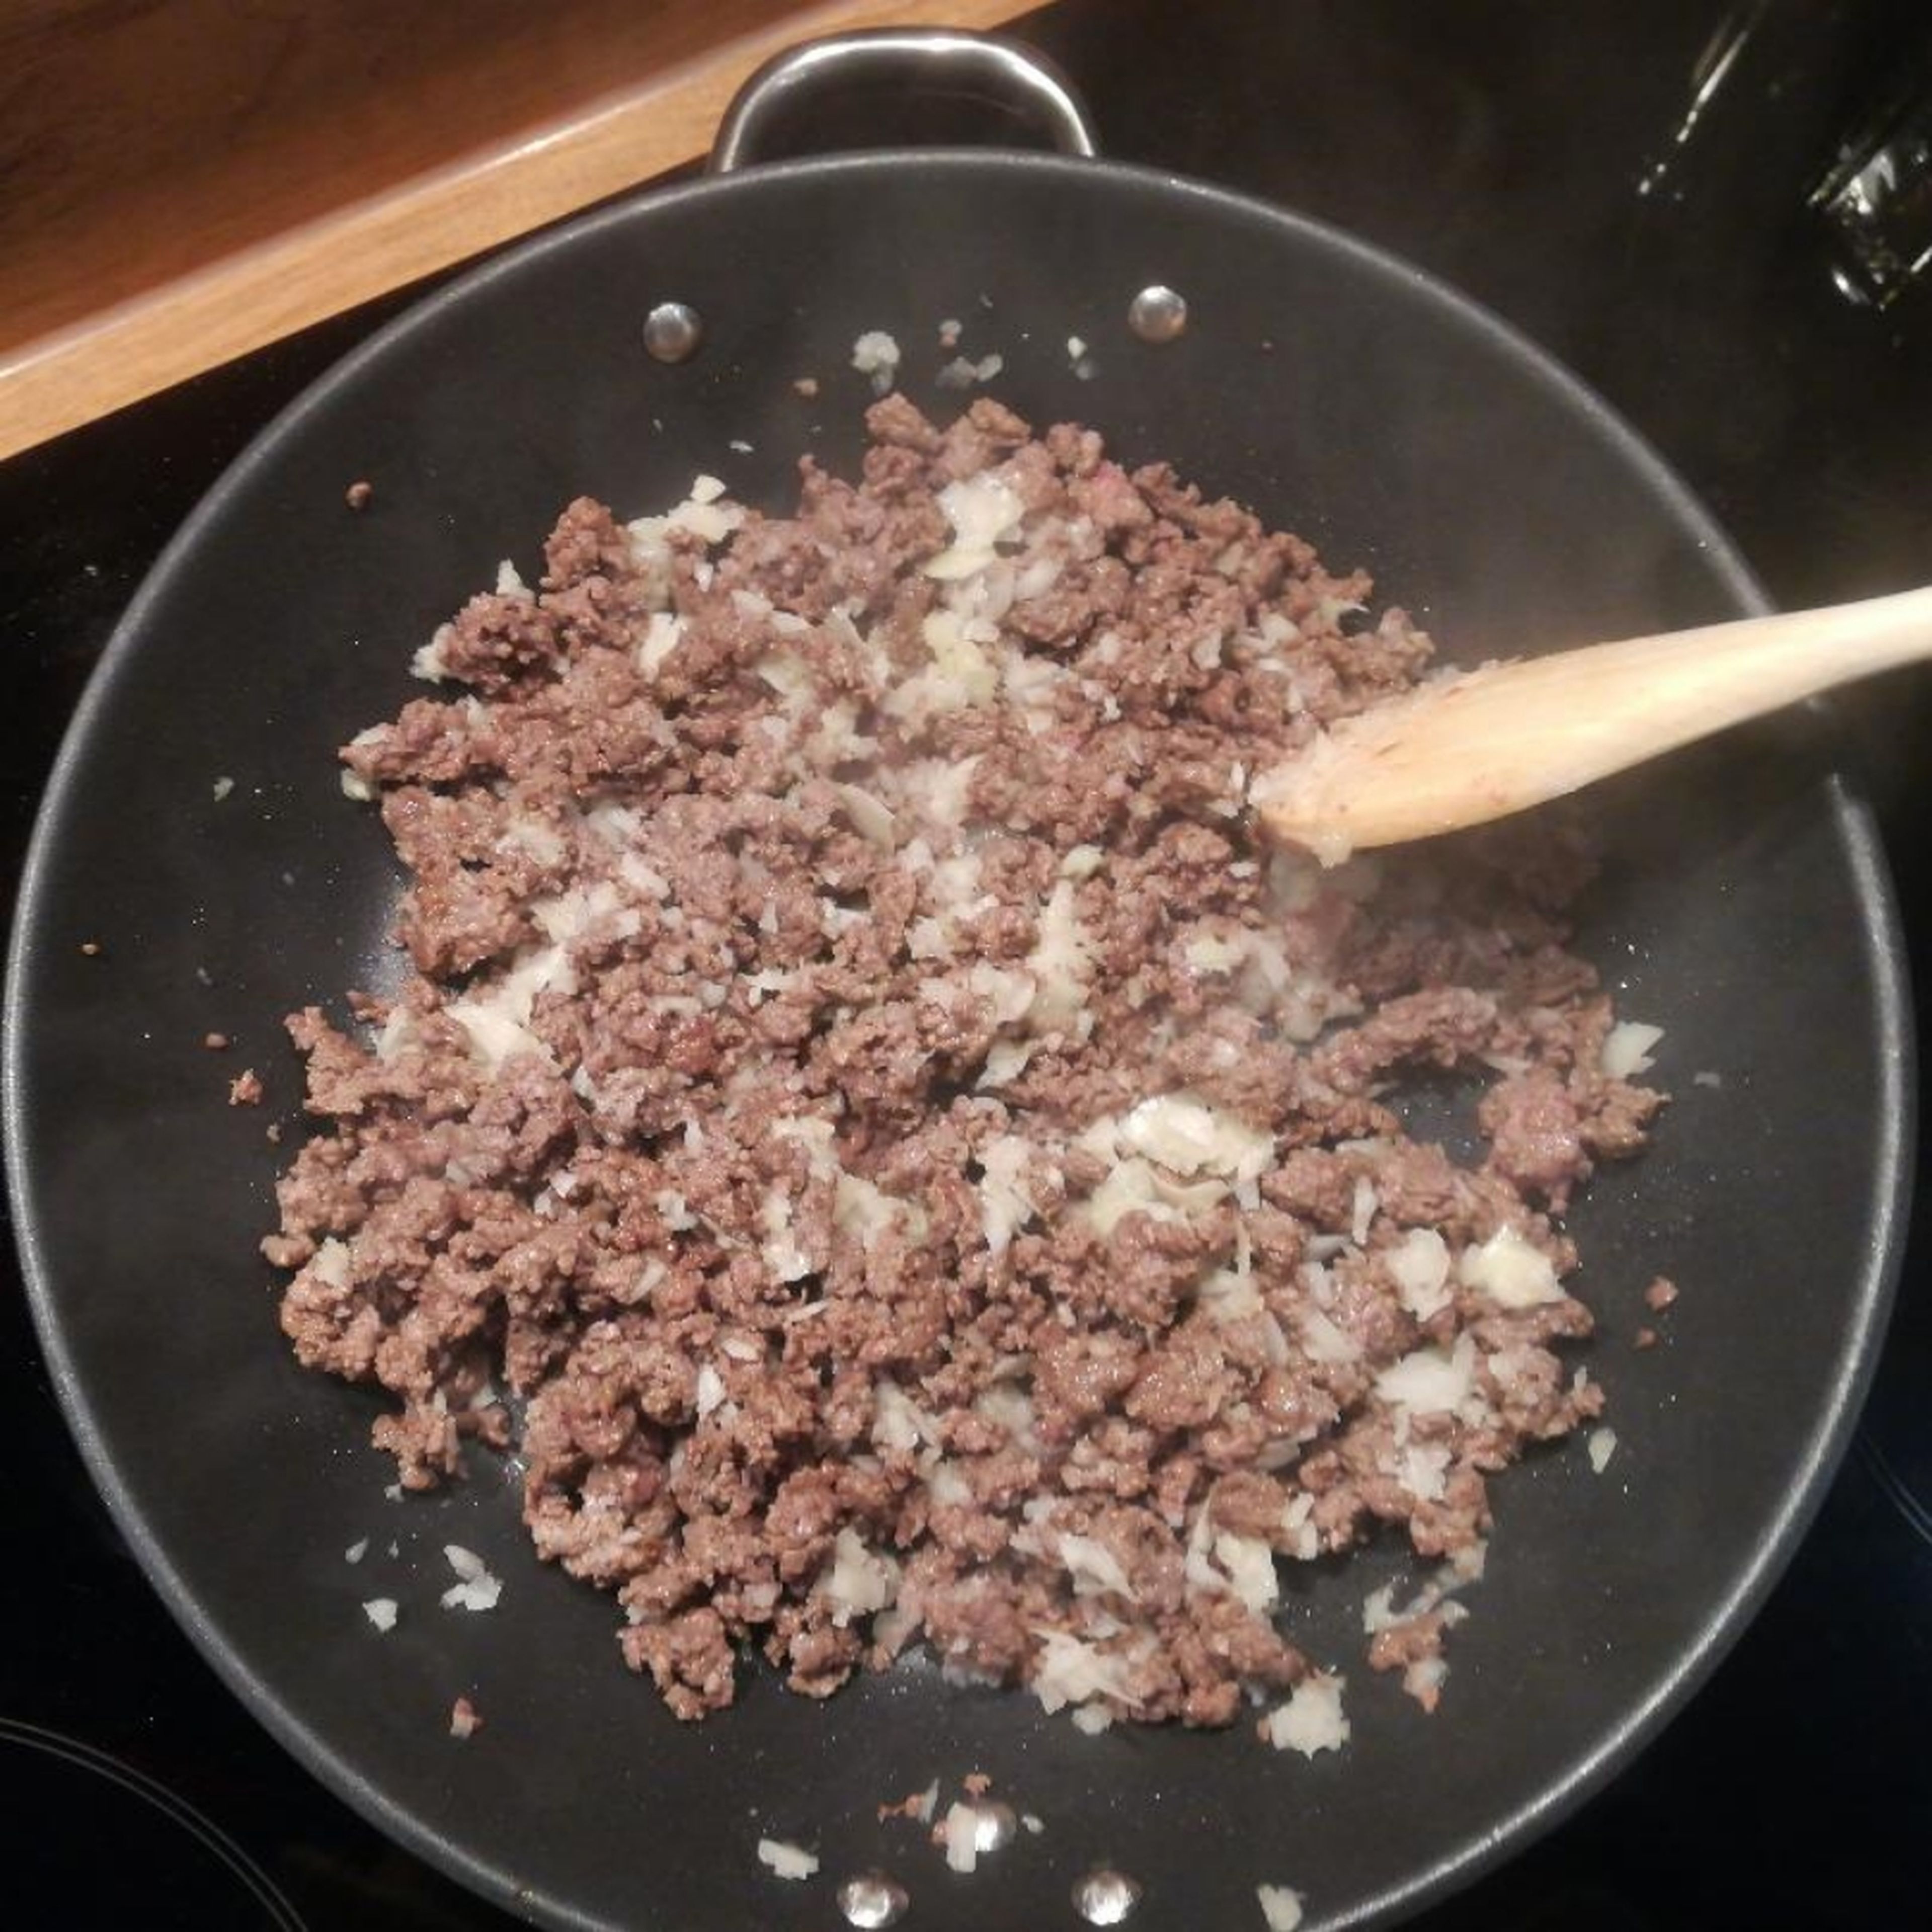 Zwiebel & Knoblauch in feine Würfel schneiden und zum Hackfleisch geben (ca. 3min mit anbraten).